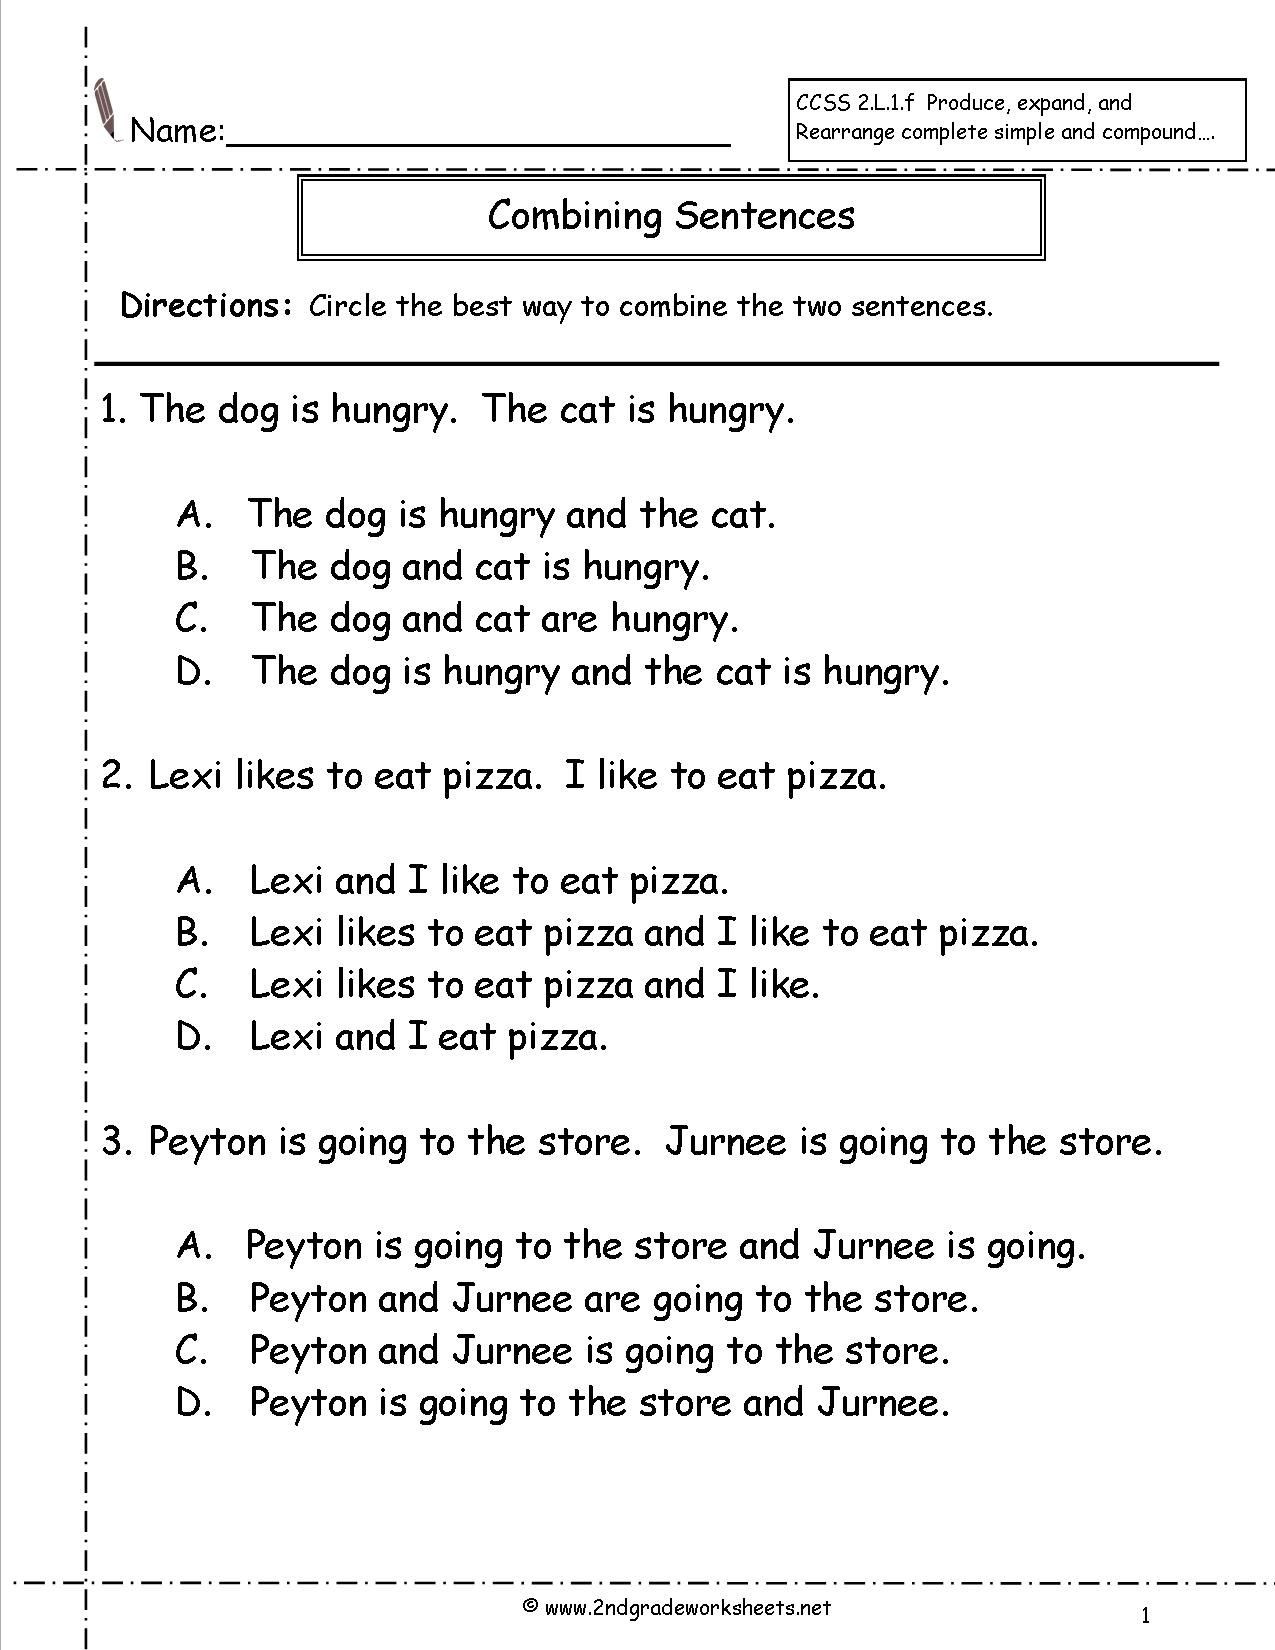 Combining Sentences Worksheet Pdf 5th Grade